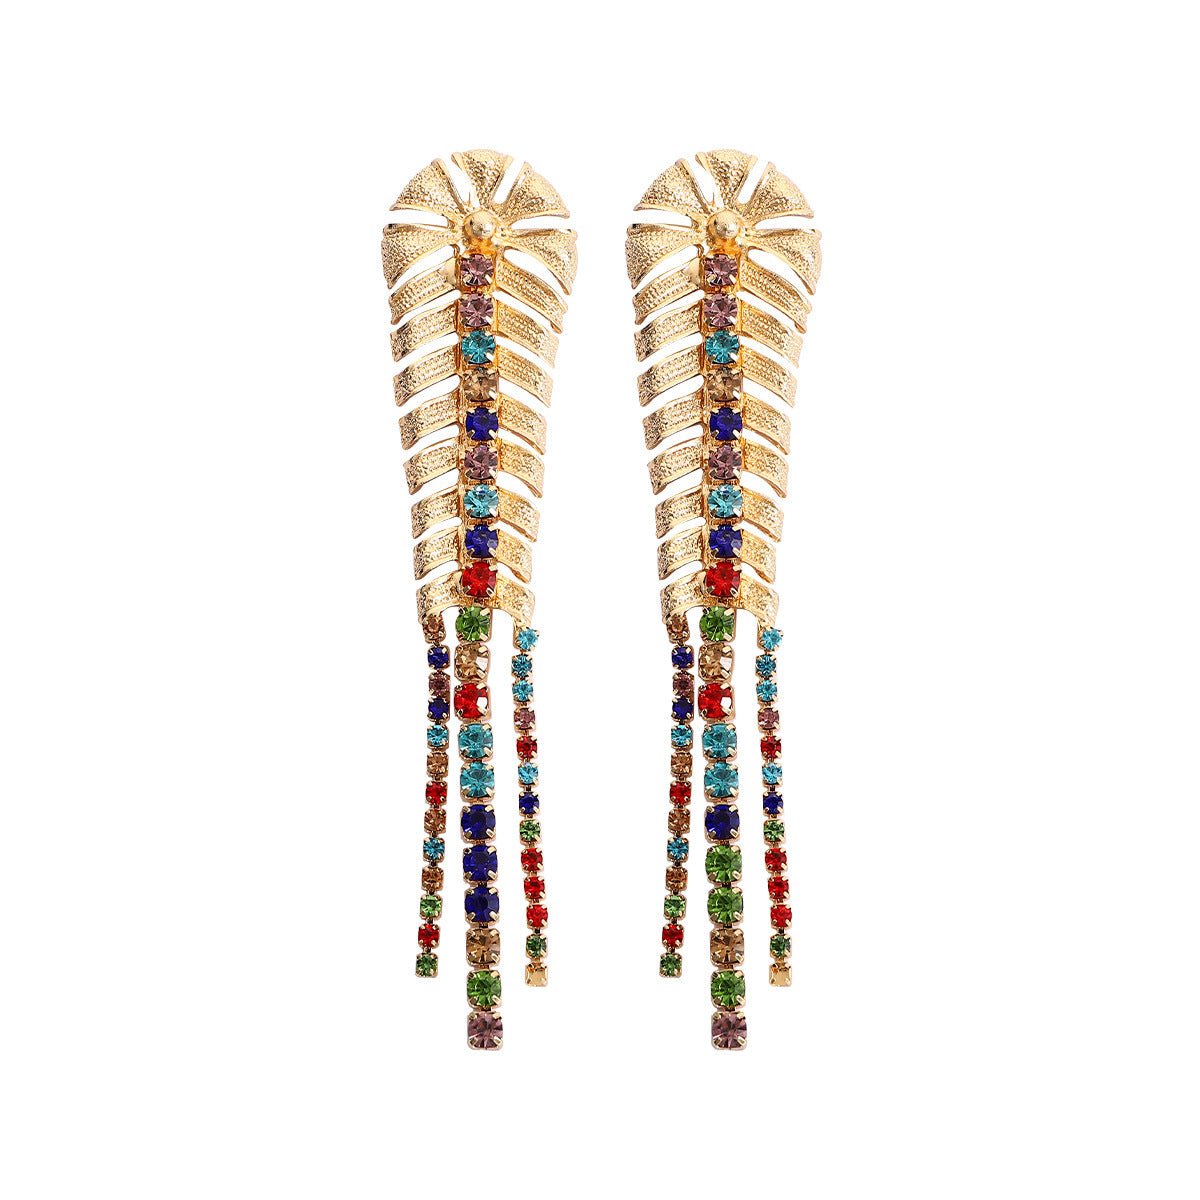 Elegant Retro Luxurious Geometric Alloy Tassel Women's Earrings Necklace Jewelry Set